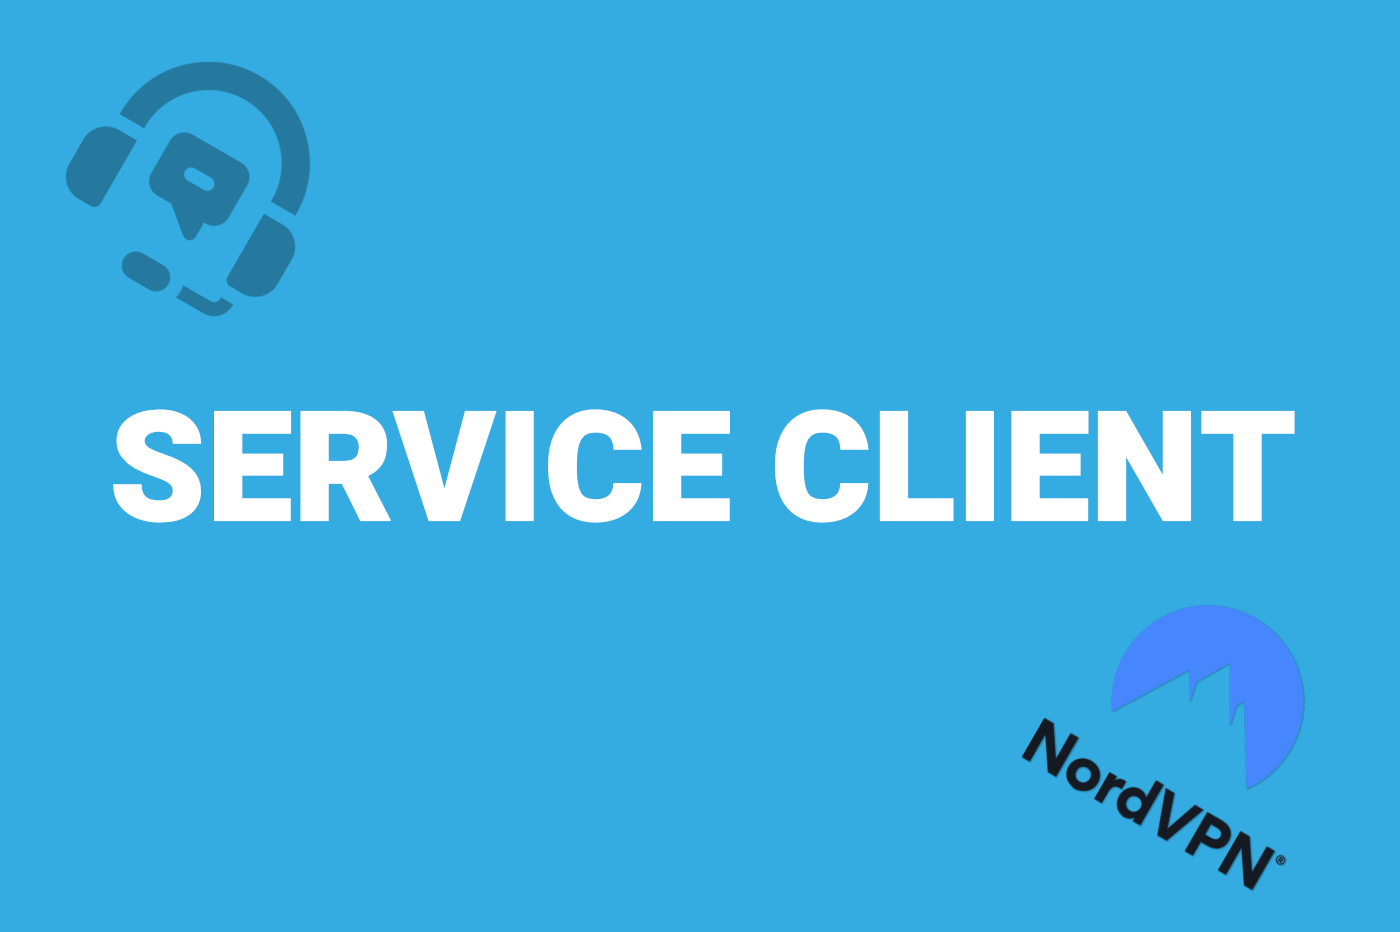 Service client NordVPN